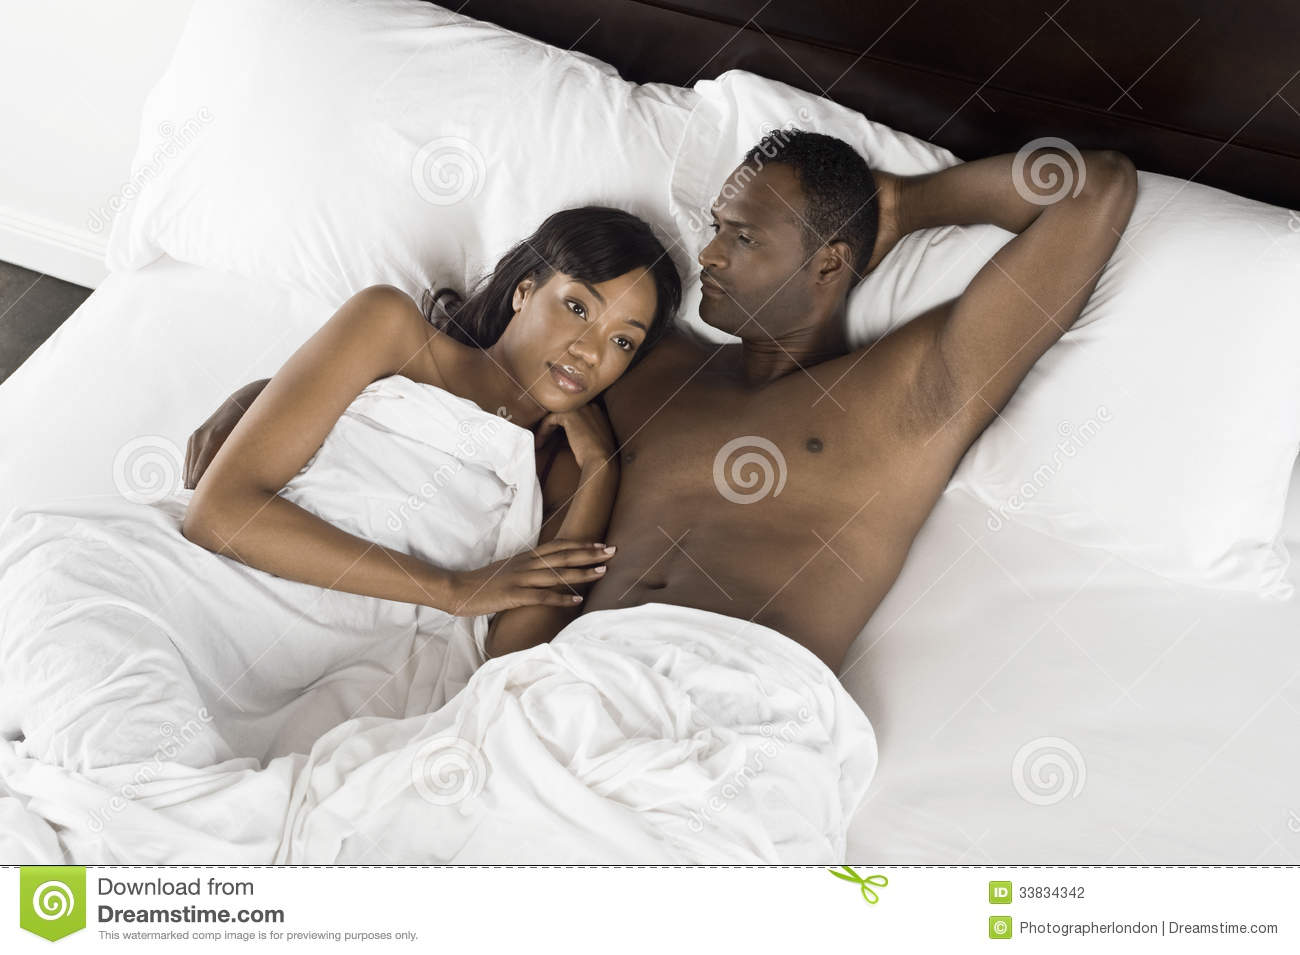 Les couples qui se couchent nus comme un ver seraient plus heureux que ceux qui dorment en pyjama ou en chemise de nuit.